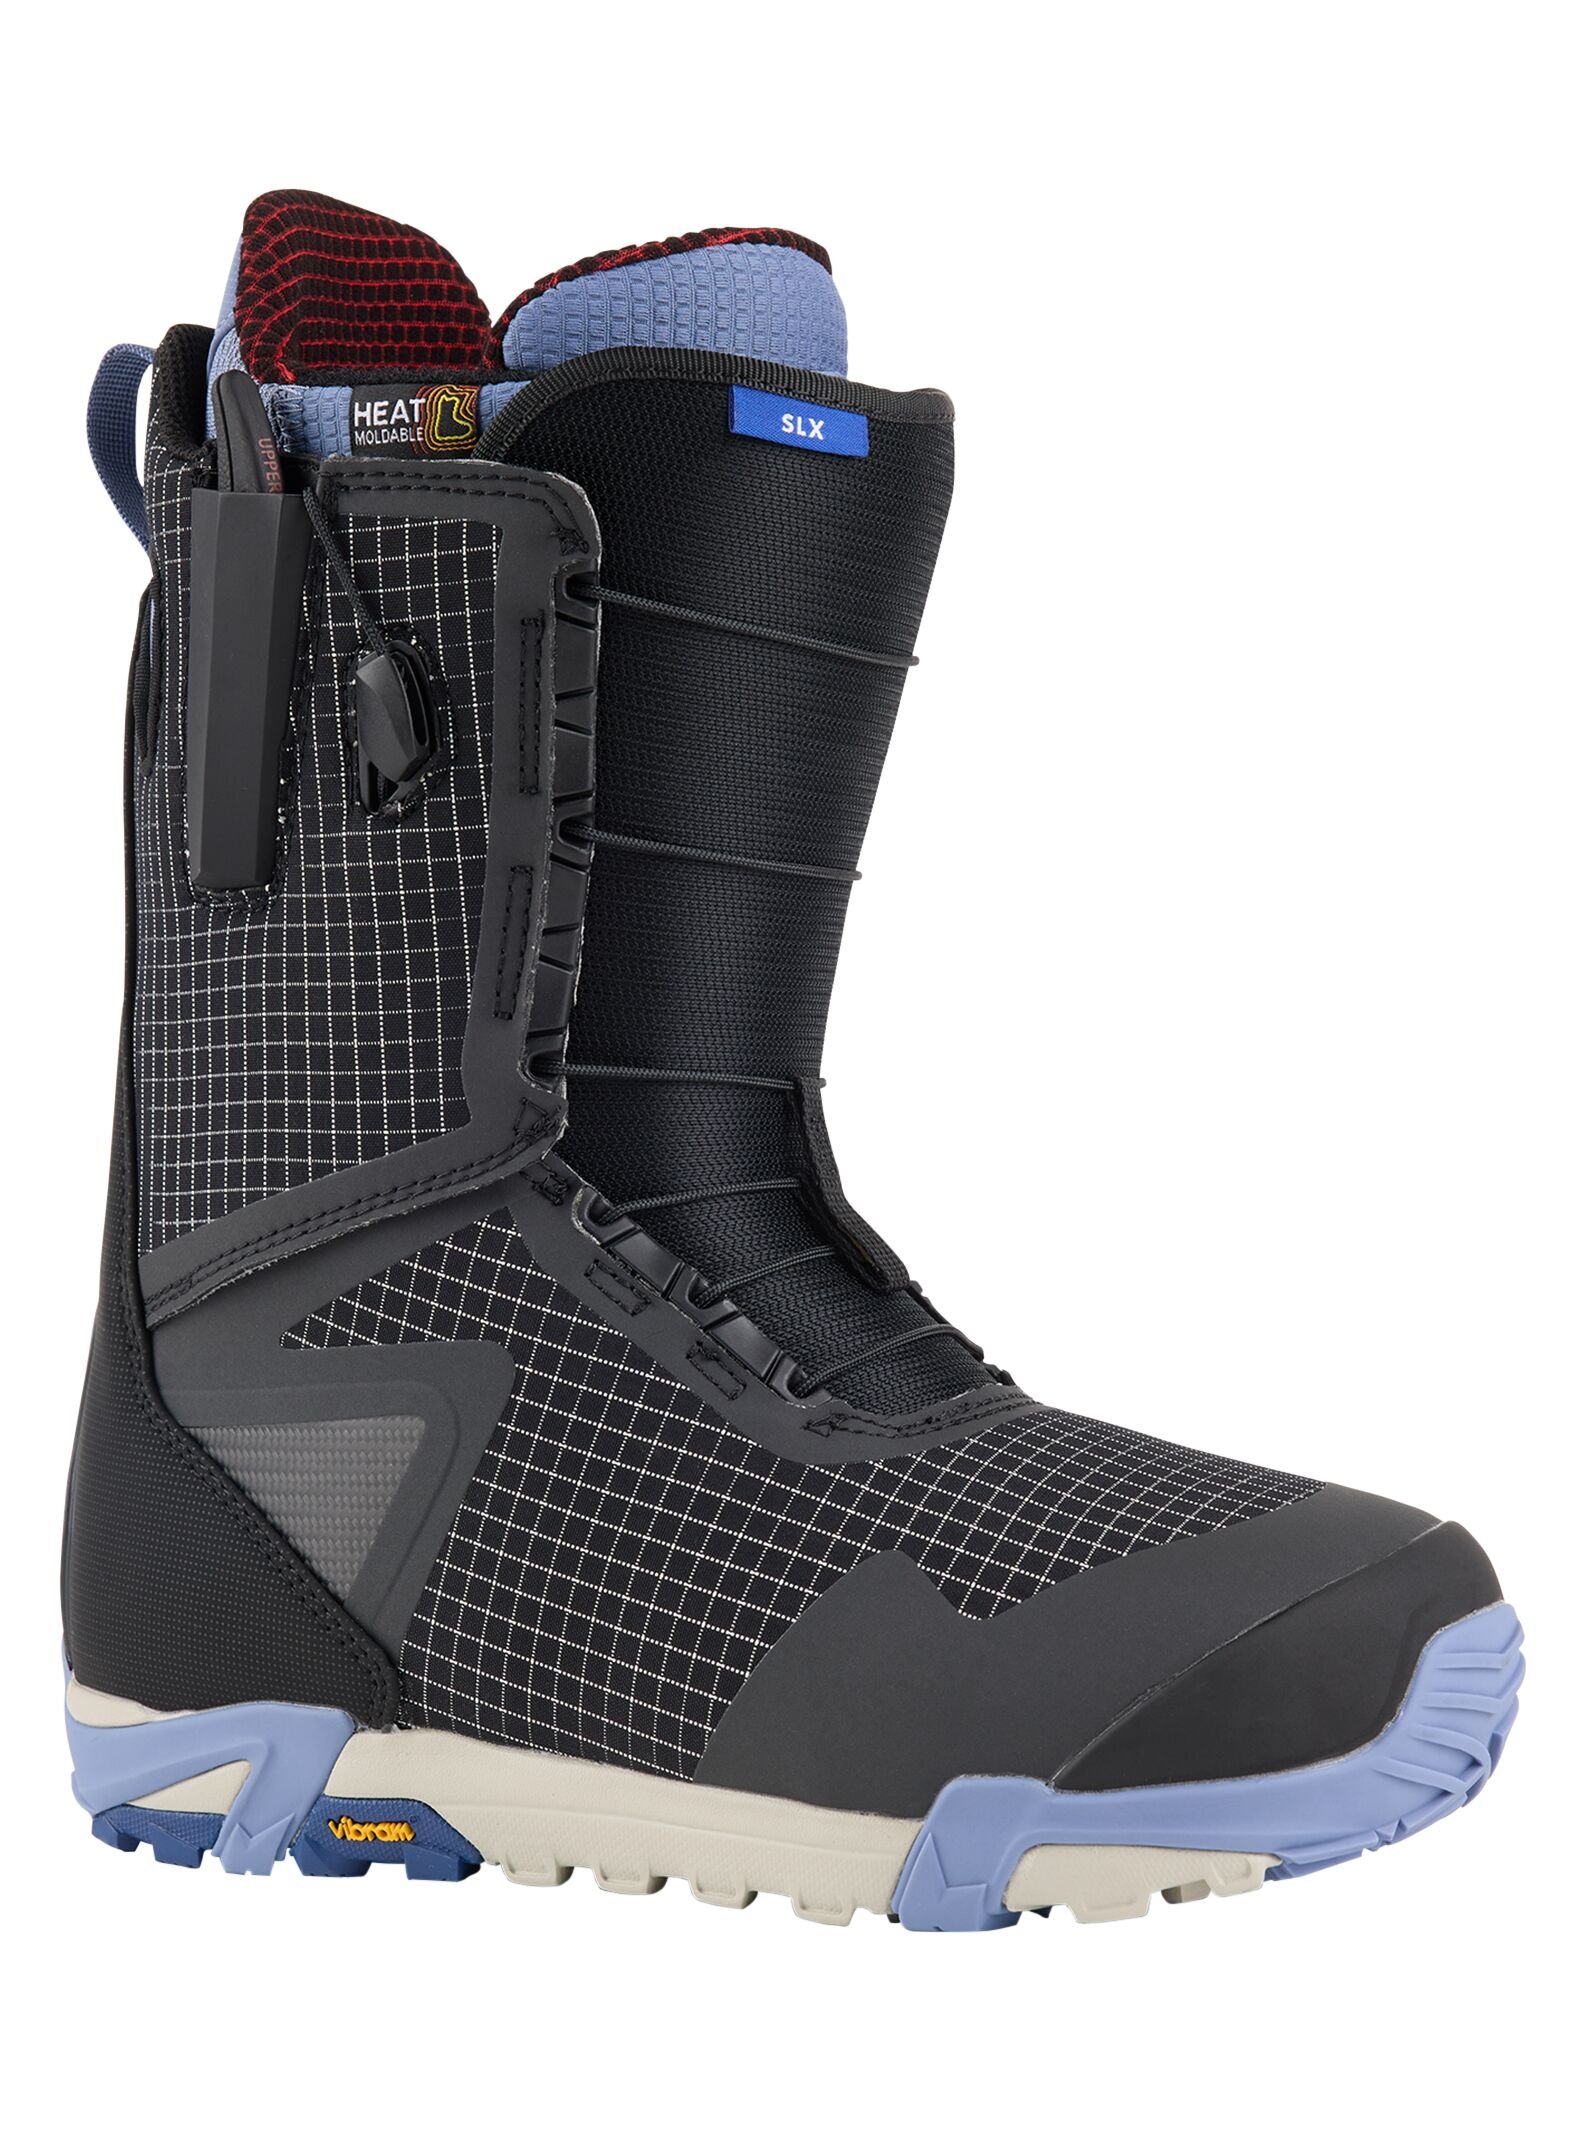 Men’s SLX Snowboard Boots